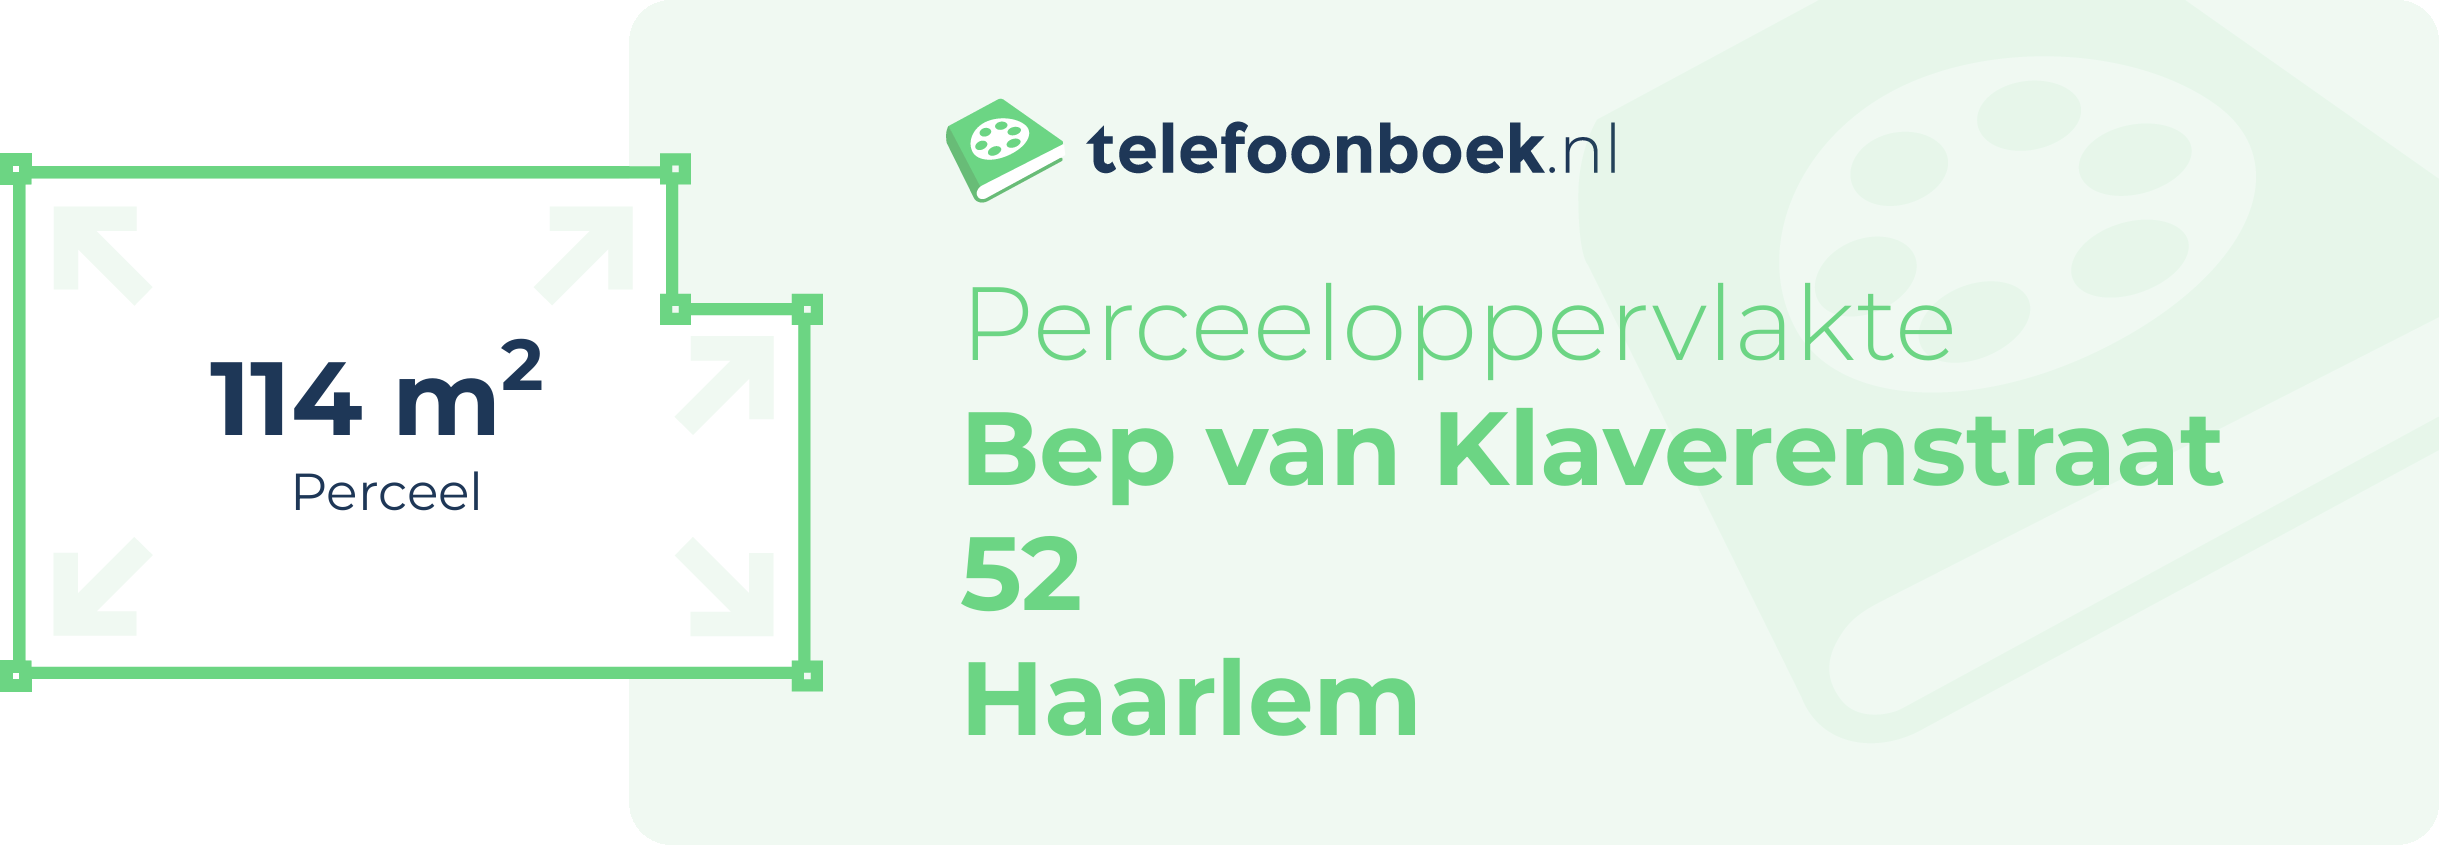 Perceeloppervlakte Bep Van Klaverenstraat 52 Haarlem